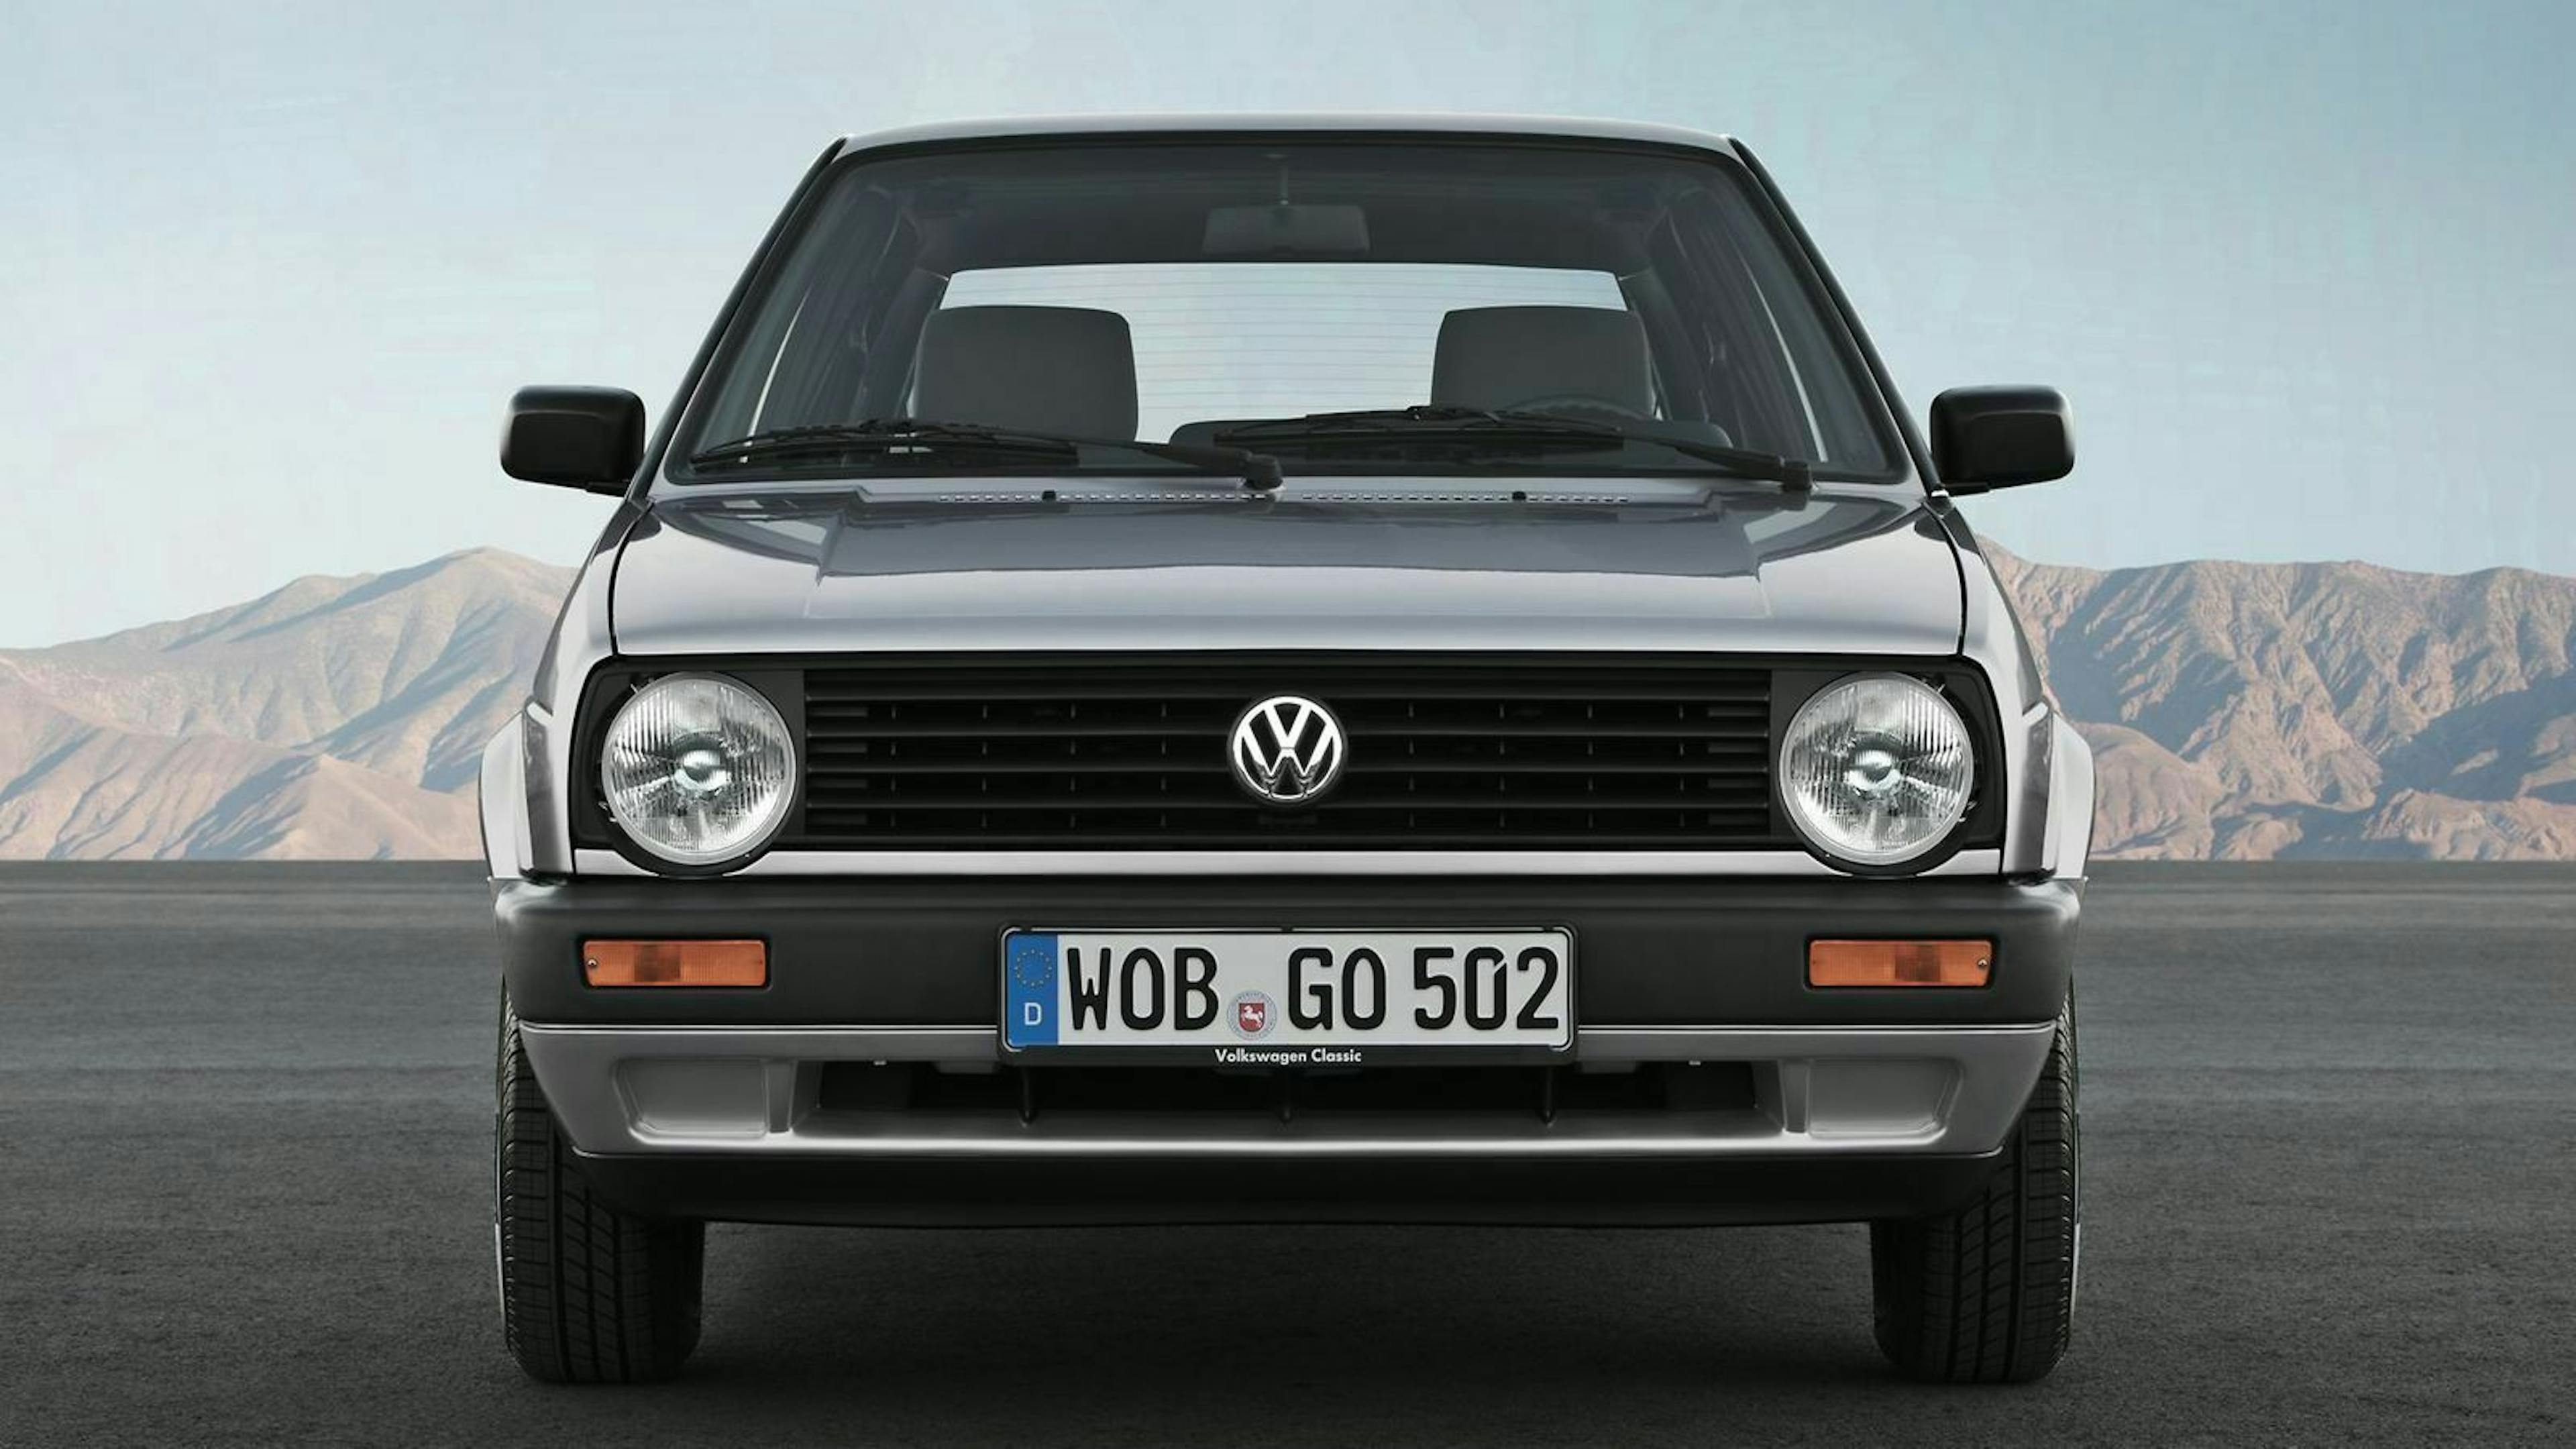 Zu sehen ist die Front des VW Golf II